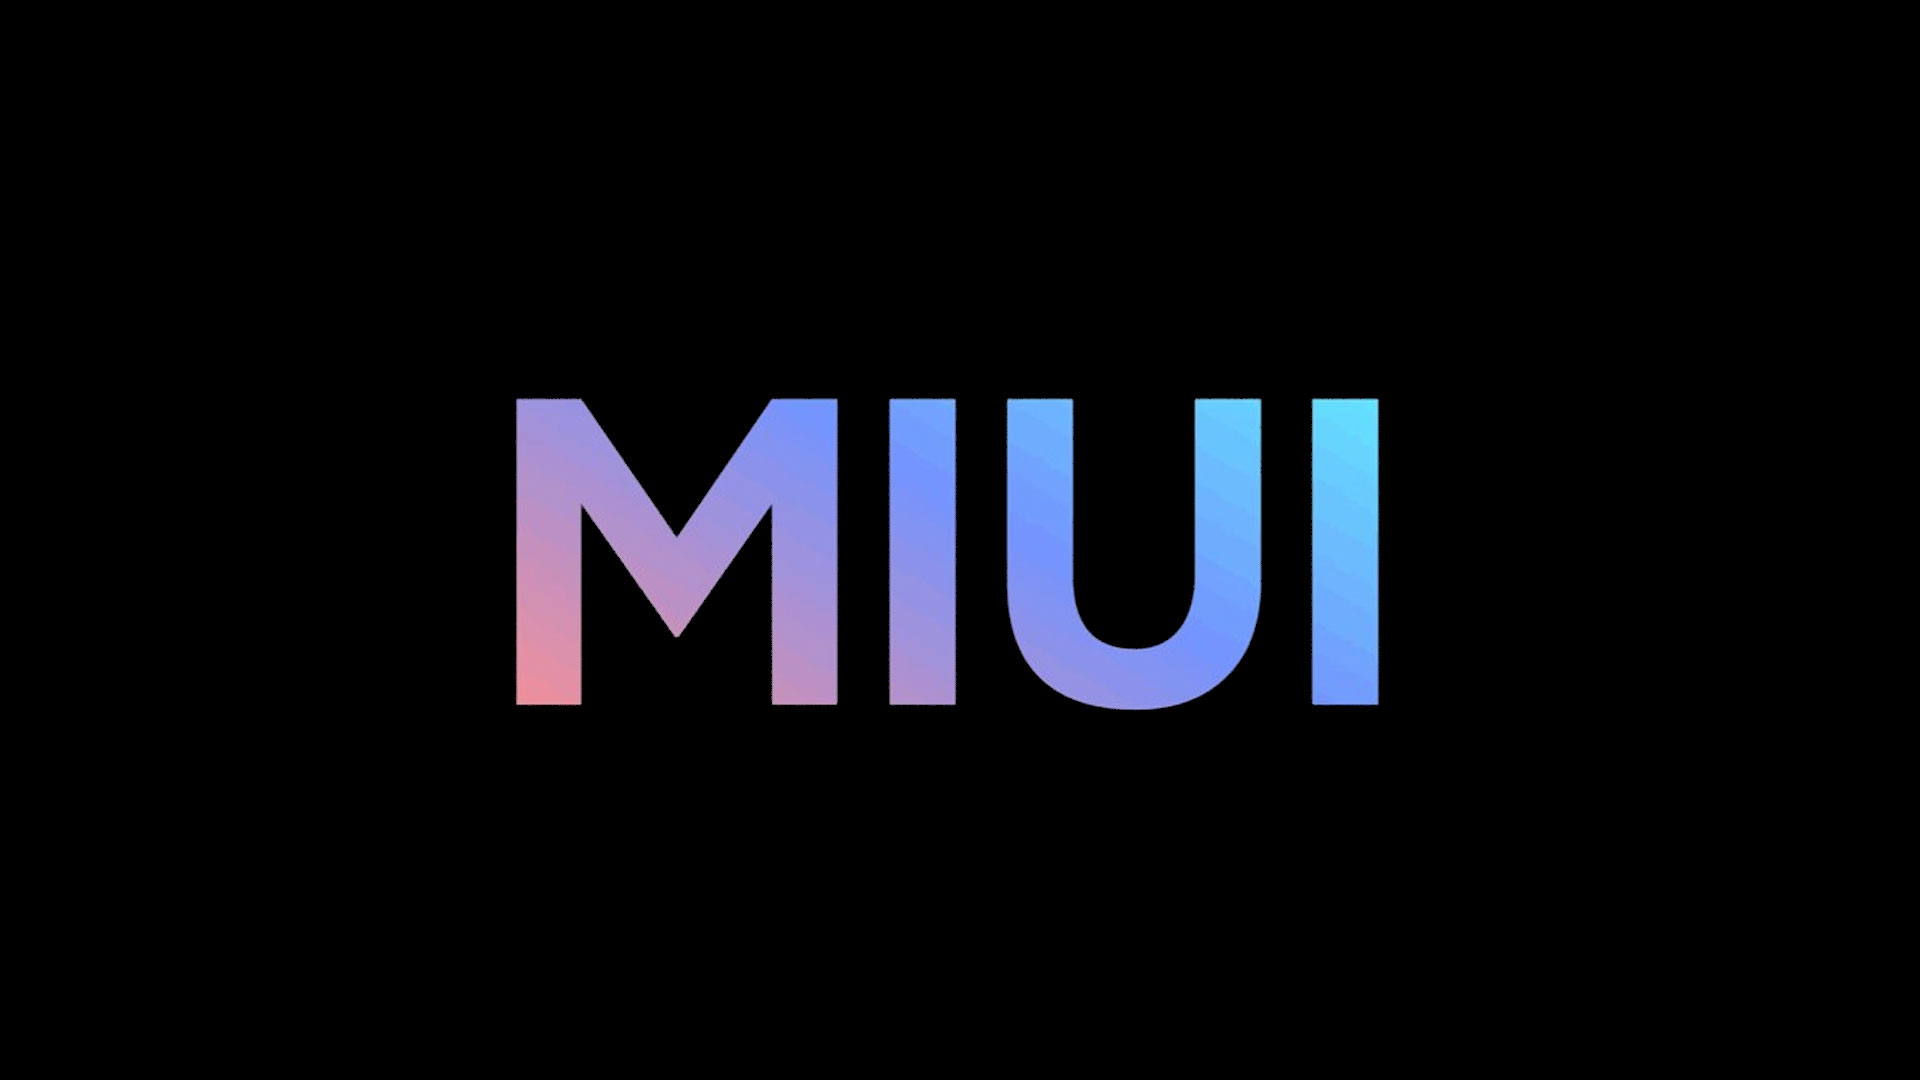 MIUI a dépassé les 600 millions d'utilisateurs mensuels, soit une augmentation de 100 millions en un an et demi.